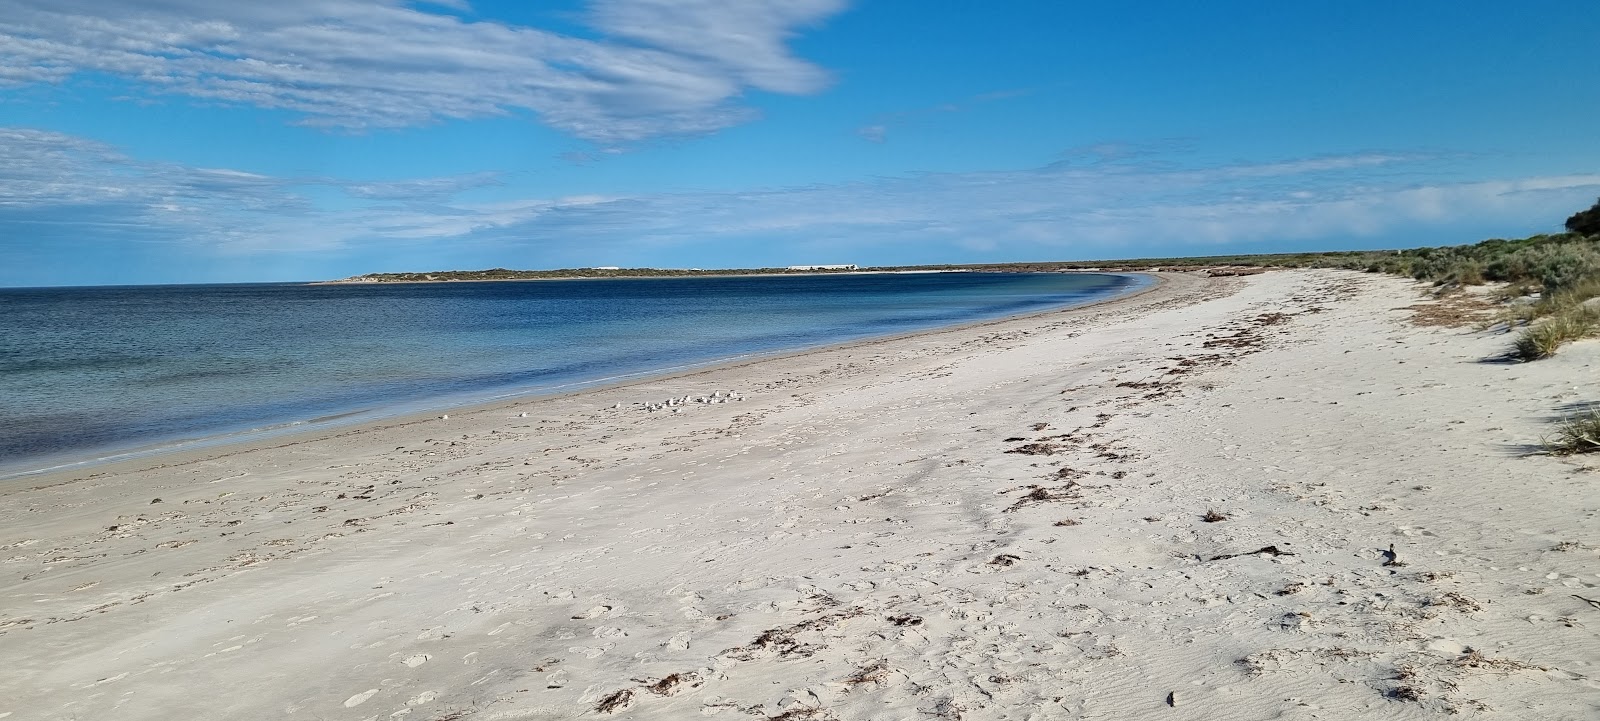 Zdjęcie Arno Bay z powierzchnią jasny piasek